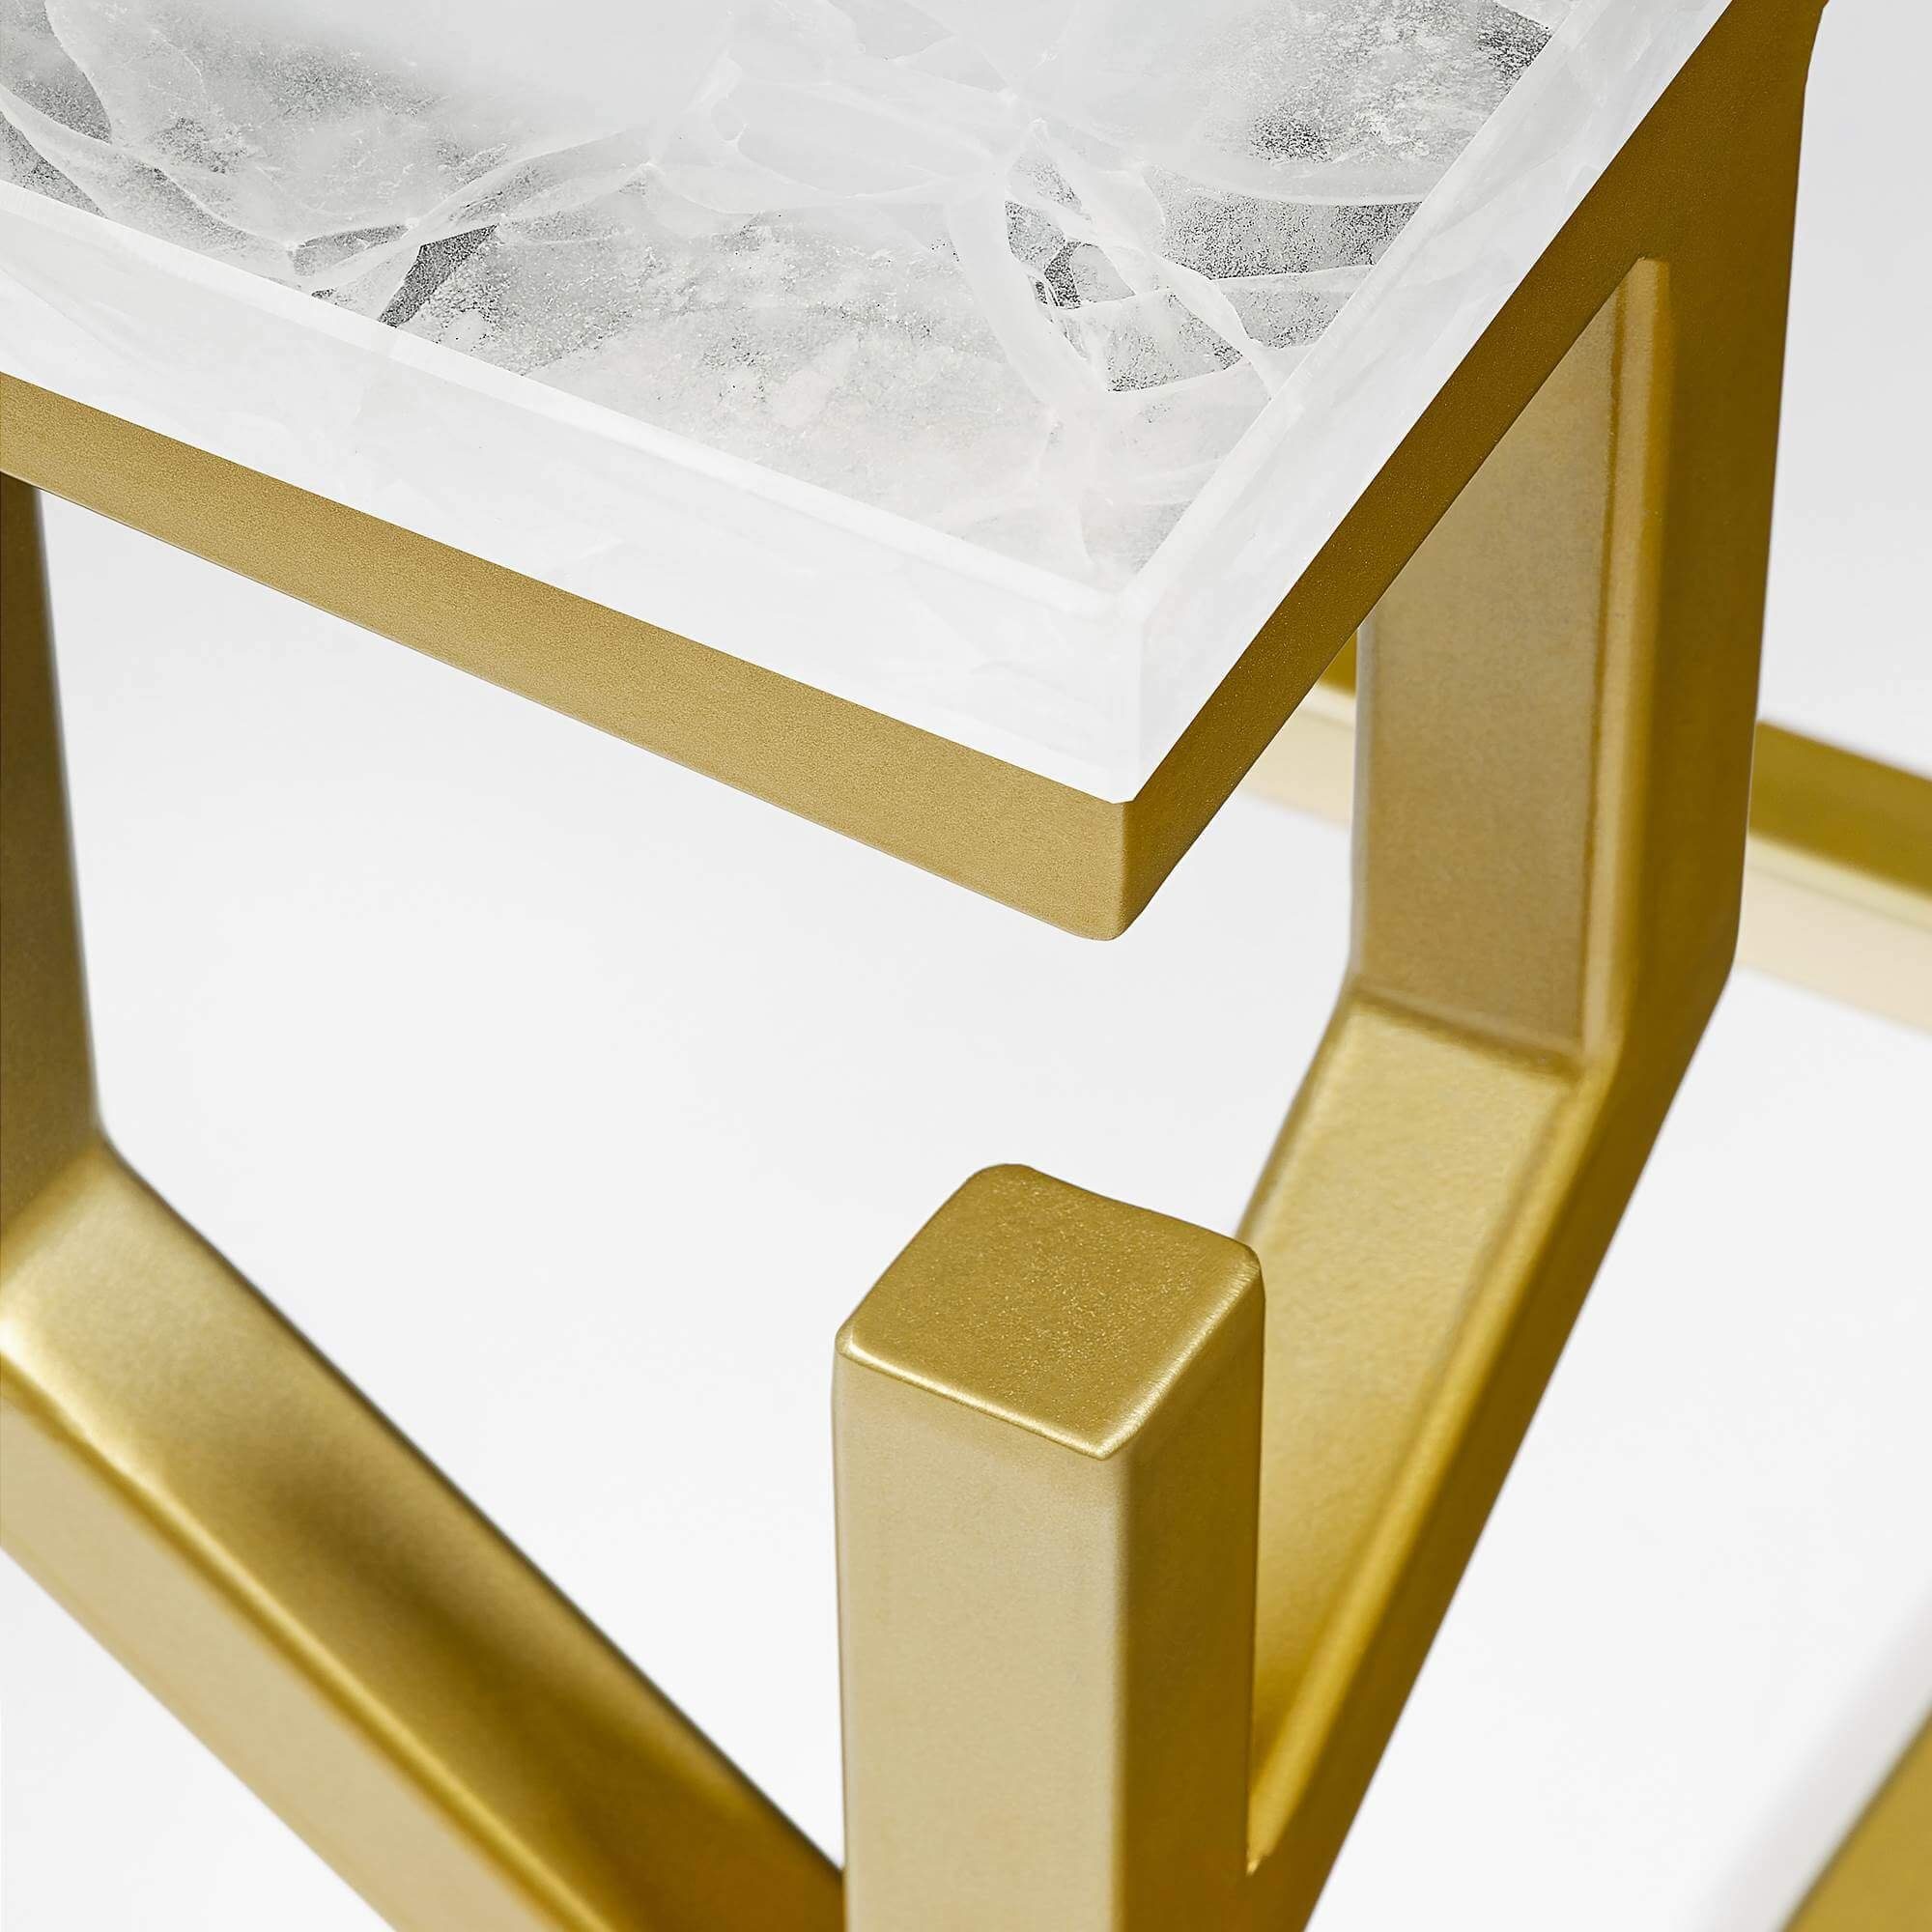 GLASKERAMIK, Ice Nugget Ablagetisch BAY gold mit MAGNA eckig, CORAL 50x50x50cm Beistelltisch Atelier Metallgestell,